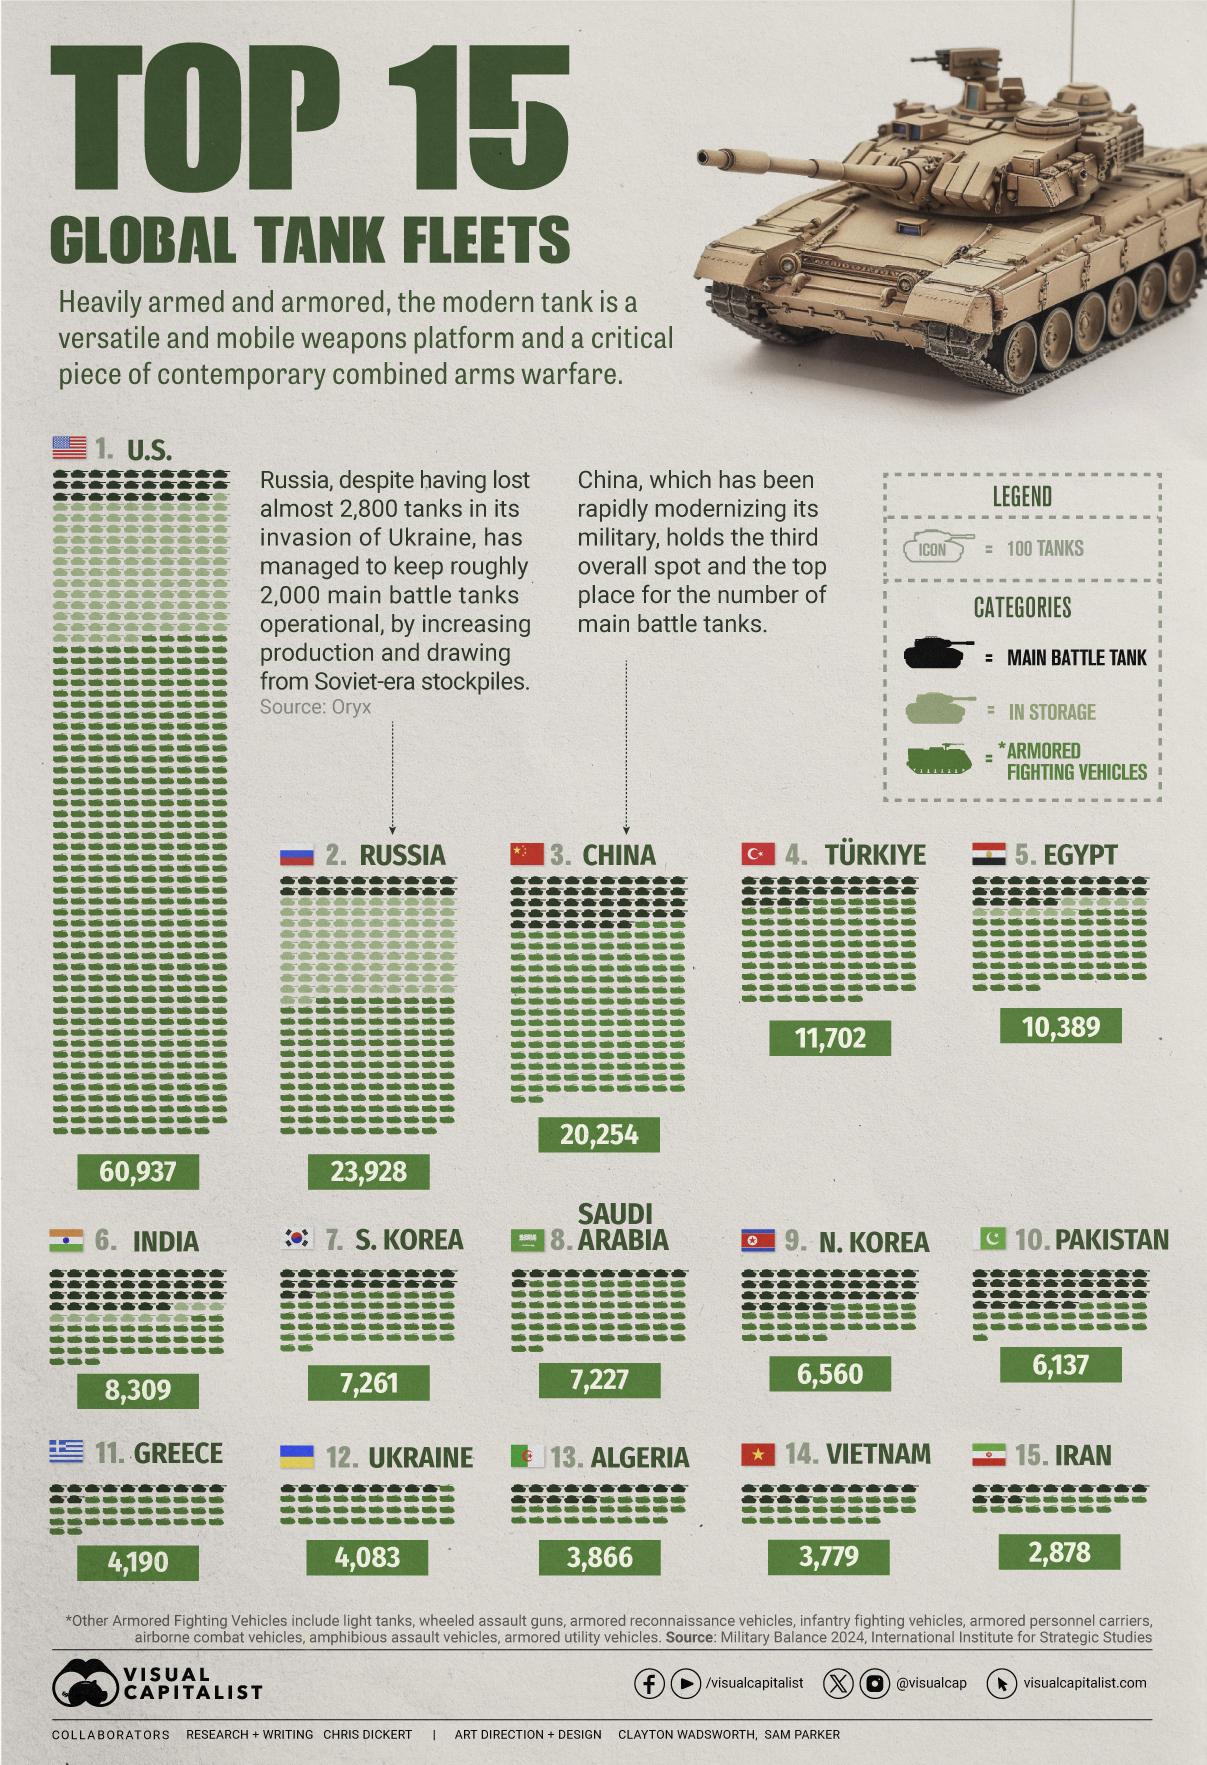 Visualizzato: le 15 migliori flotte di carri armati globali